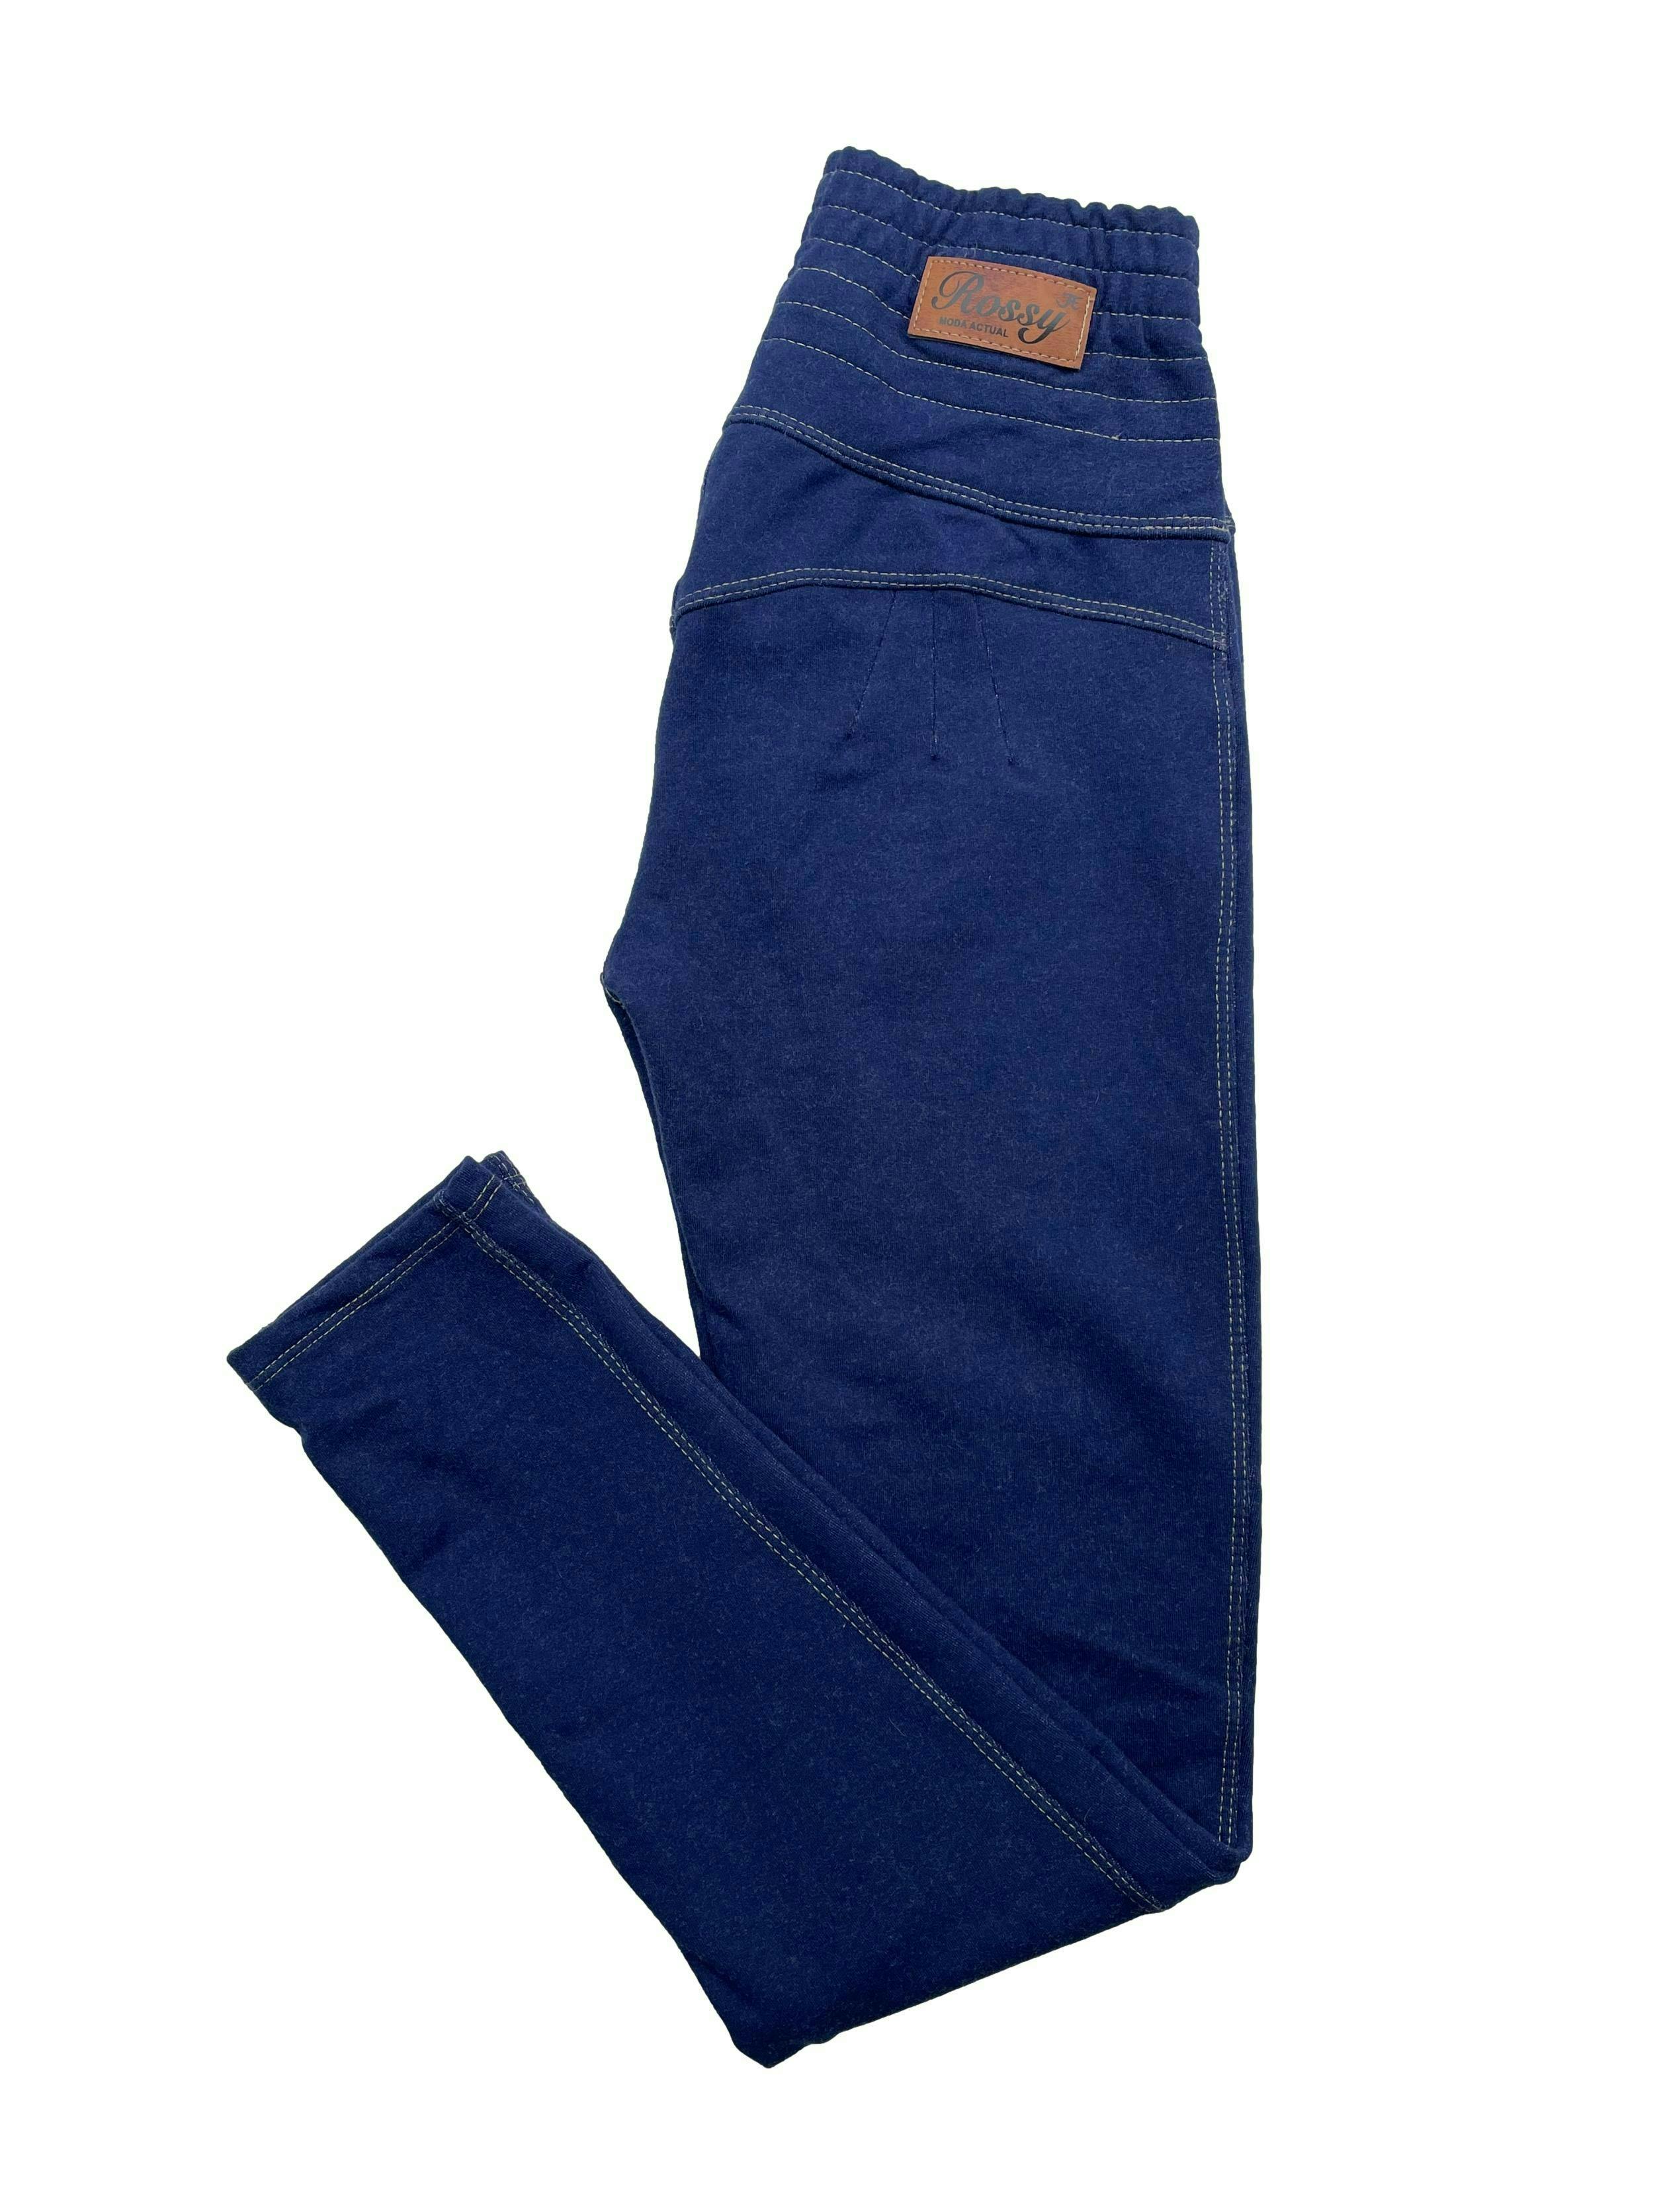 Pantalón azul tipo jean stretch con pinzas posteriores y pretina fruncida. Cintura 60cm sin estirar, Largo 90cm.